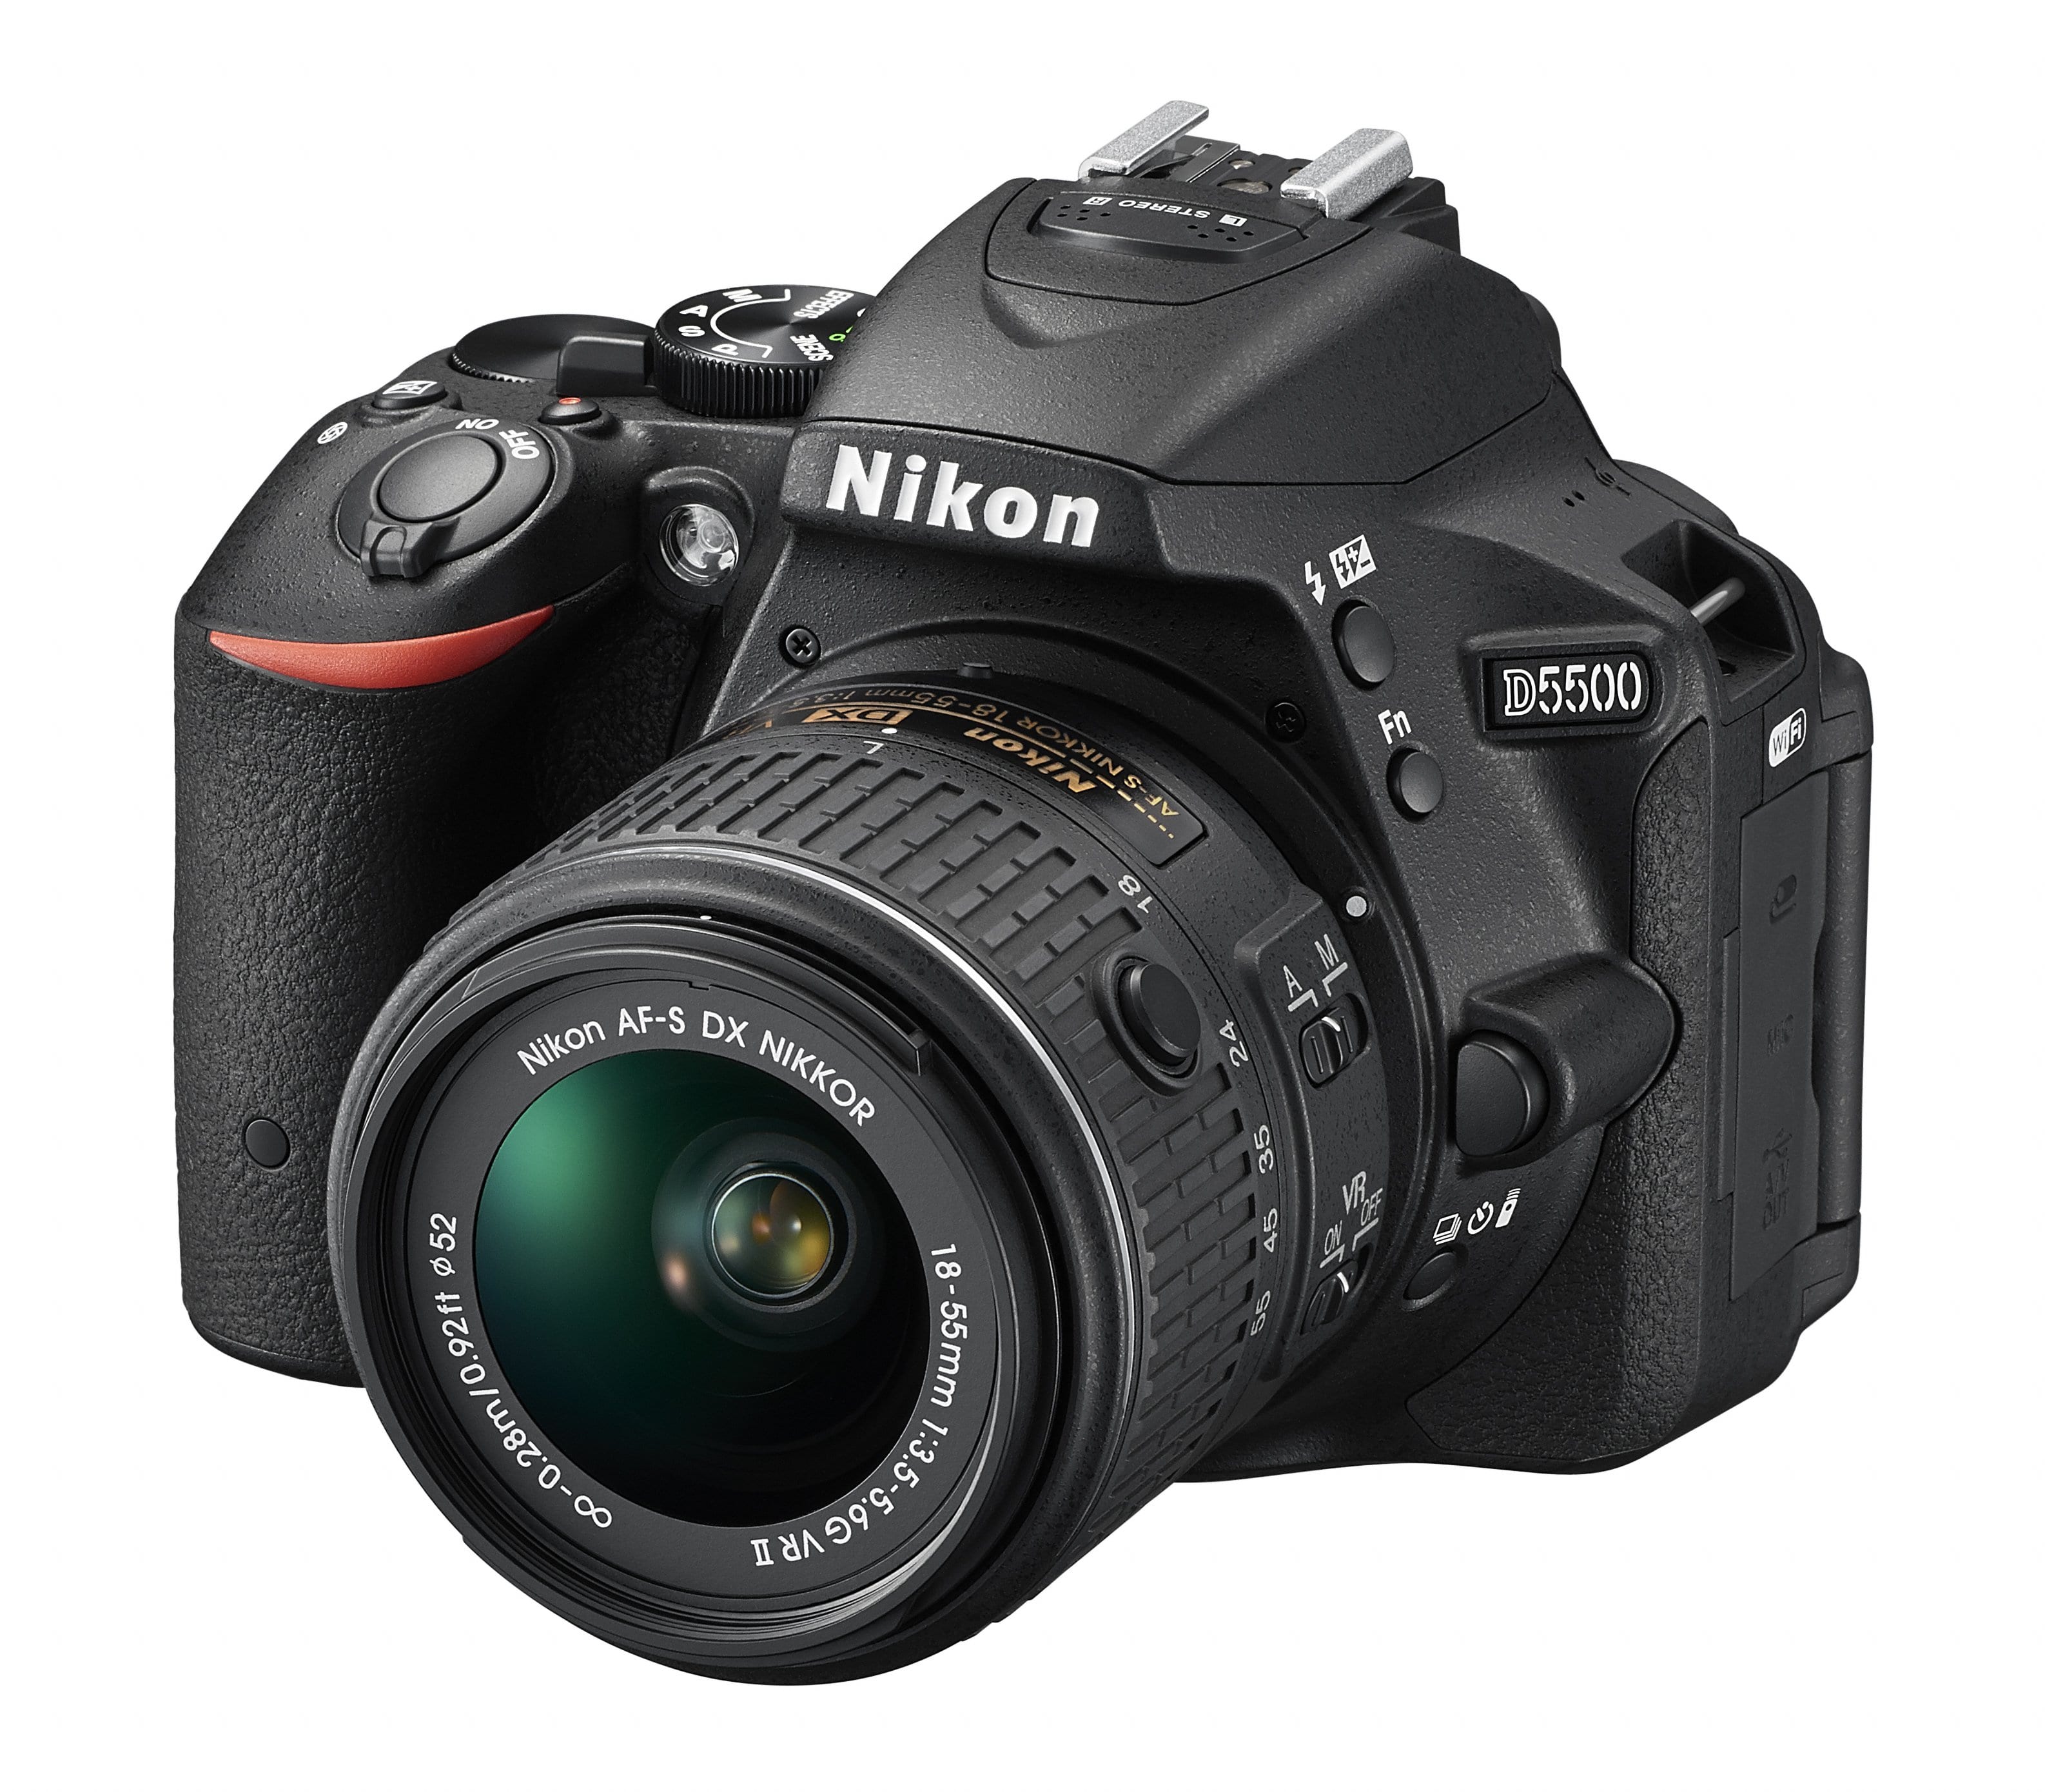 Le Nikon D5500